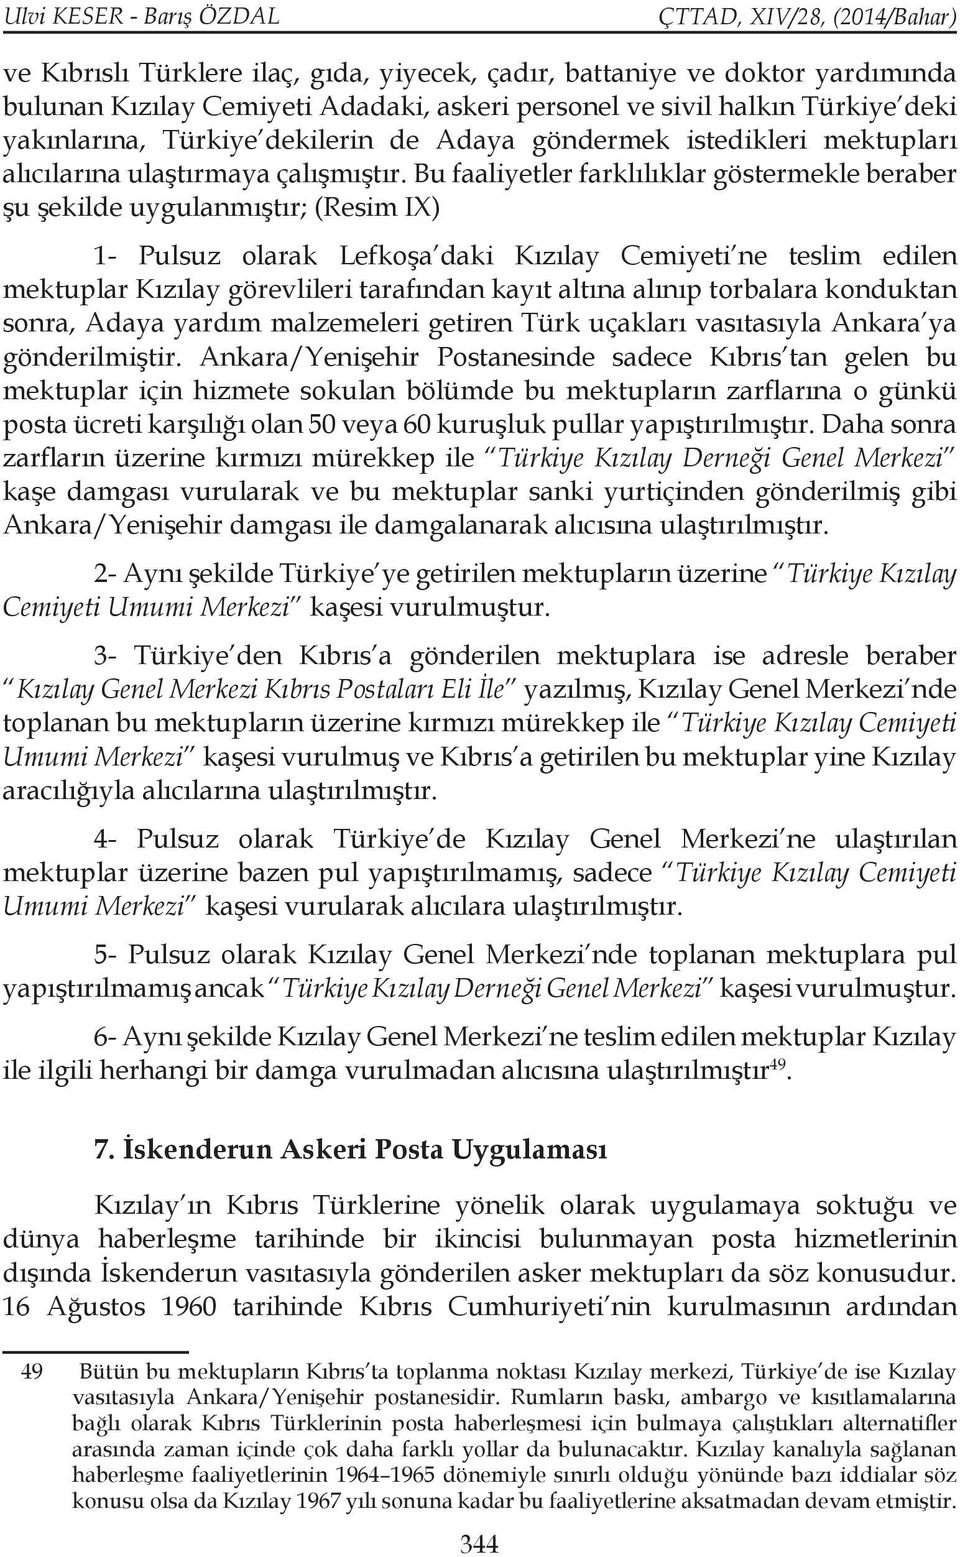 Bu faaliyetler farklılıklar göstermekle beraber şu şekilde uygulanmıştır; (Resim IX) 1- Pulsuz olarak Lefkoşa daki Kızılay Cemiyeti ne teslim edilen mektuplar Kızılay görevlileri tarafından kayıt